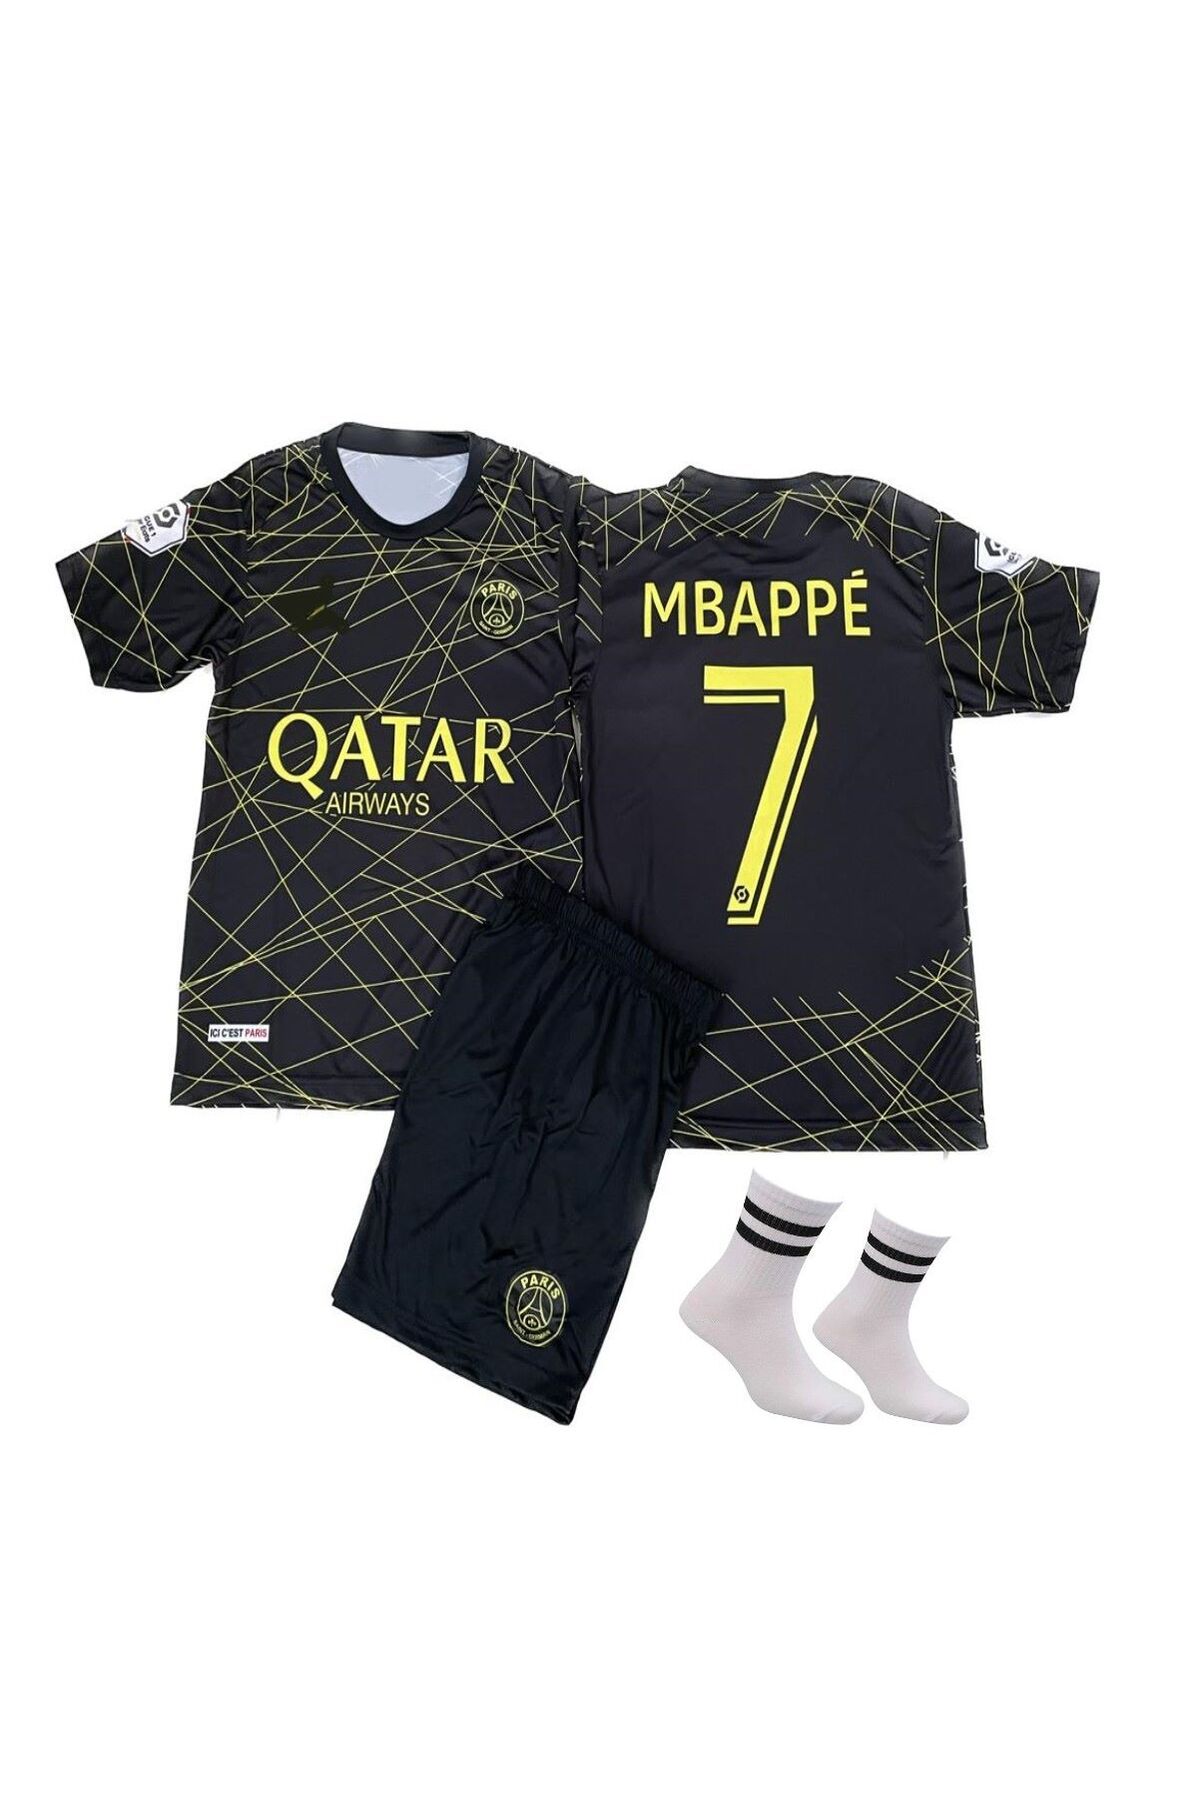 yenteks Mbappe Psg Gold-siyah Çocuk Futbol Forması Özel Tasarım 4lü Set Ç5988